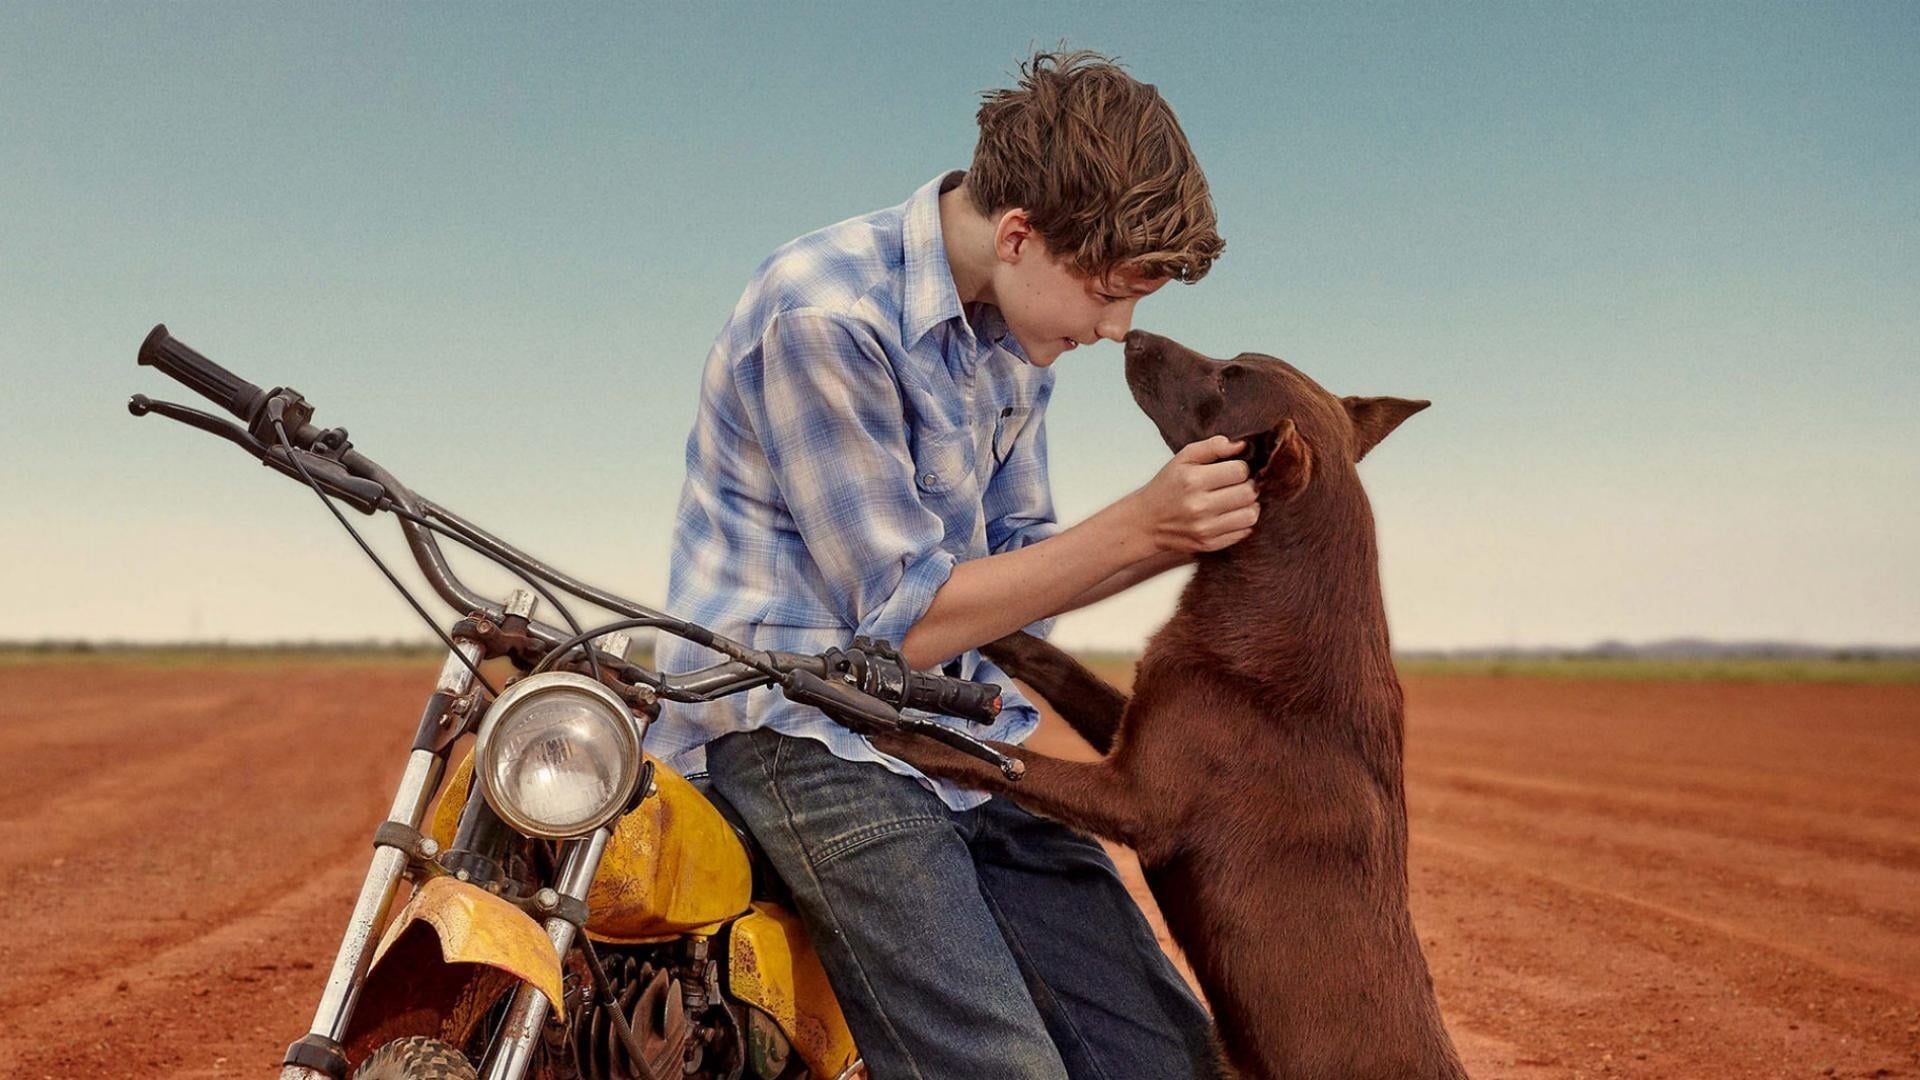 Red Dog movie, Australian outback, Childhood friends, Heartwarming tale, 1920x1080 Full HD Desktop